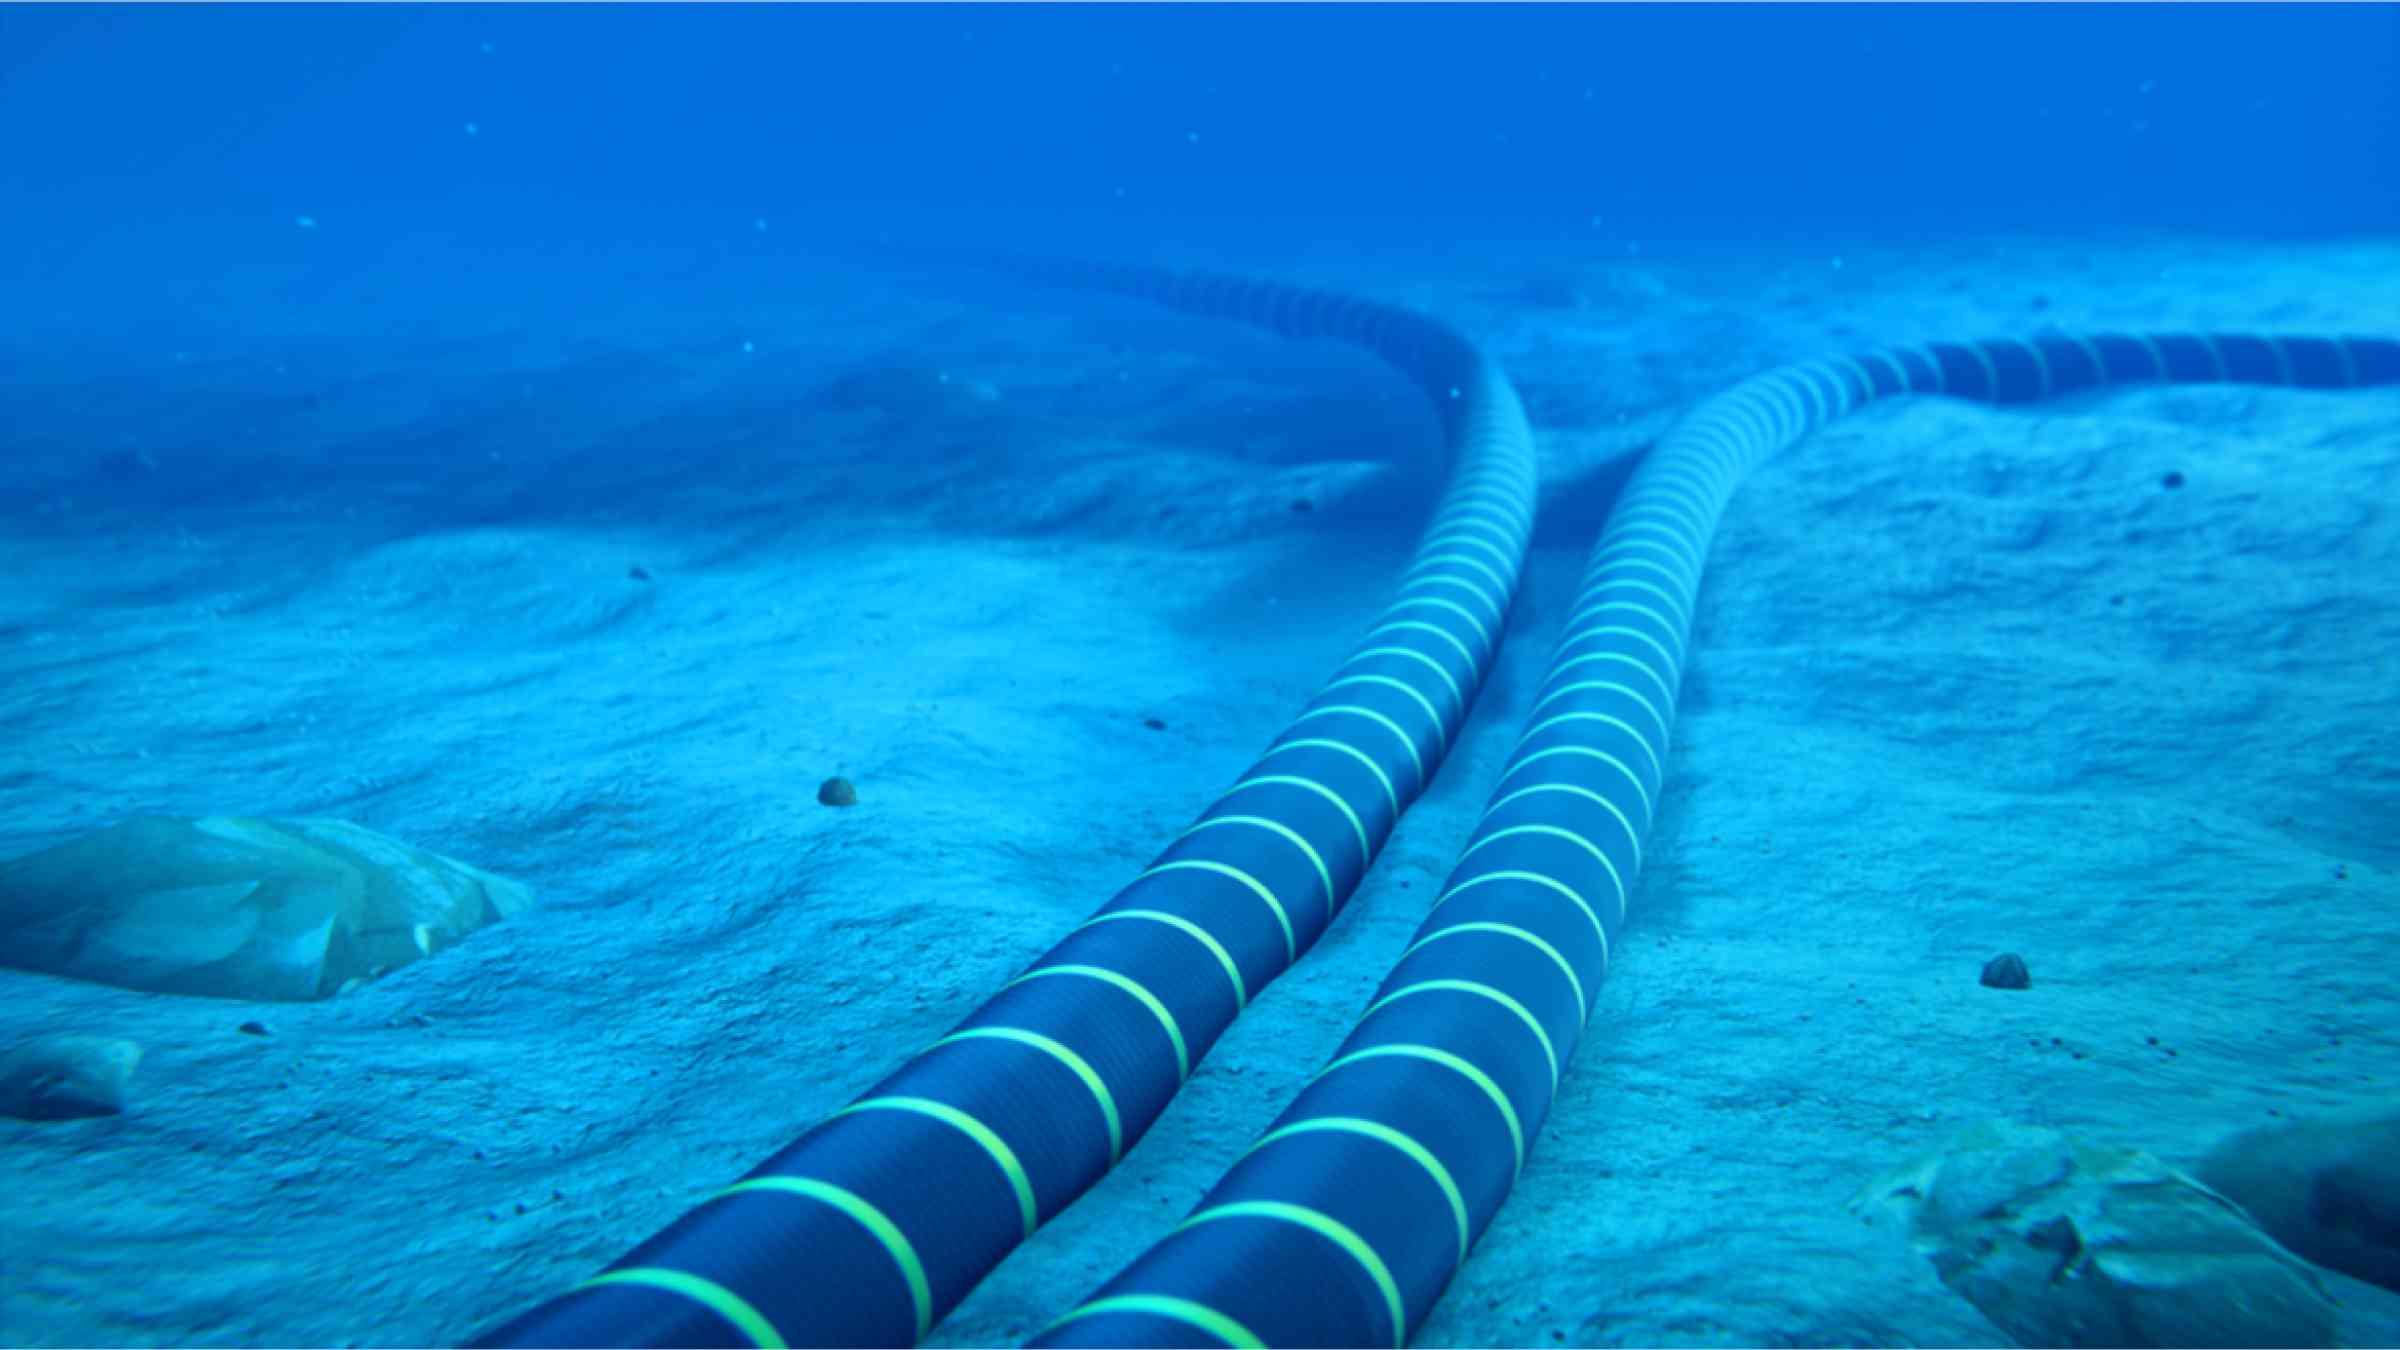 Submarine telecommunication cable